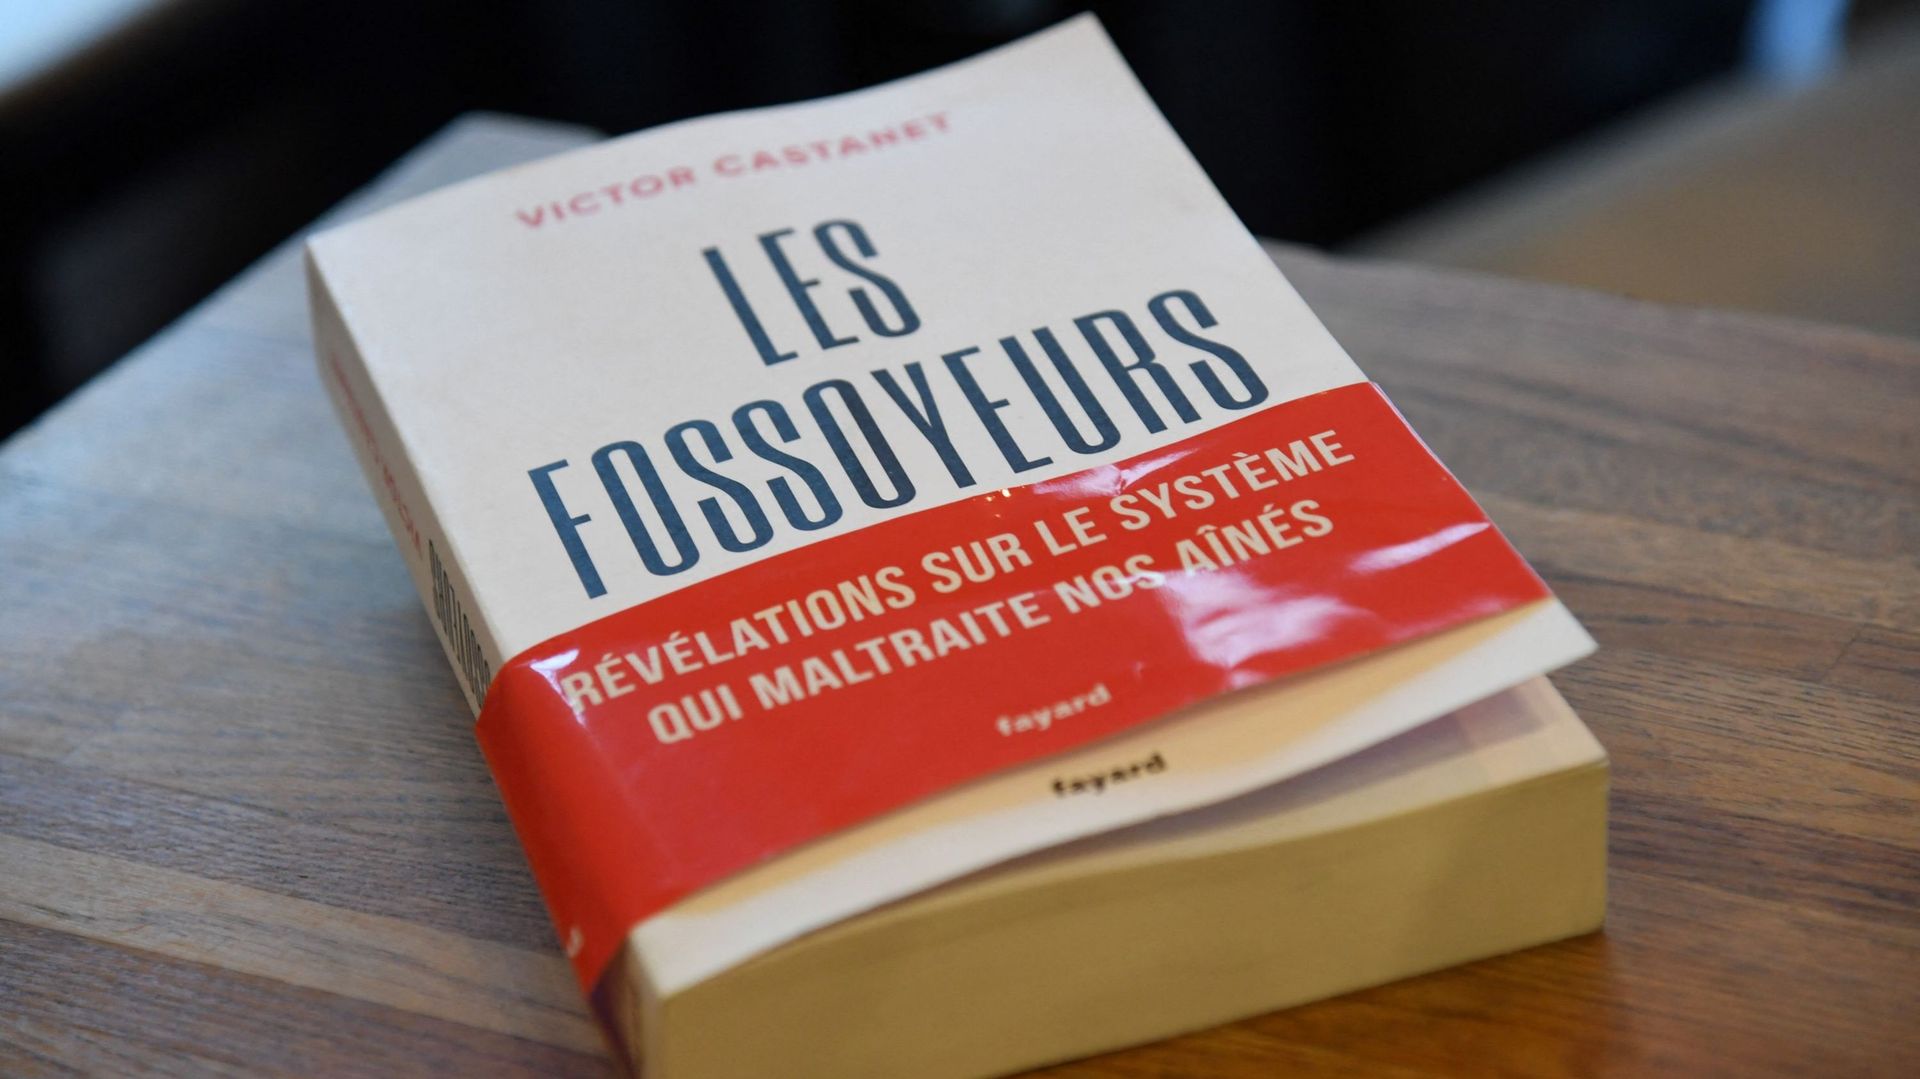 "Les Fossoyeurs", par Victor Castanet